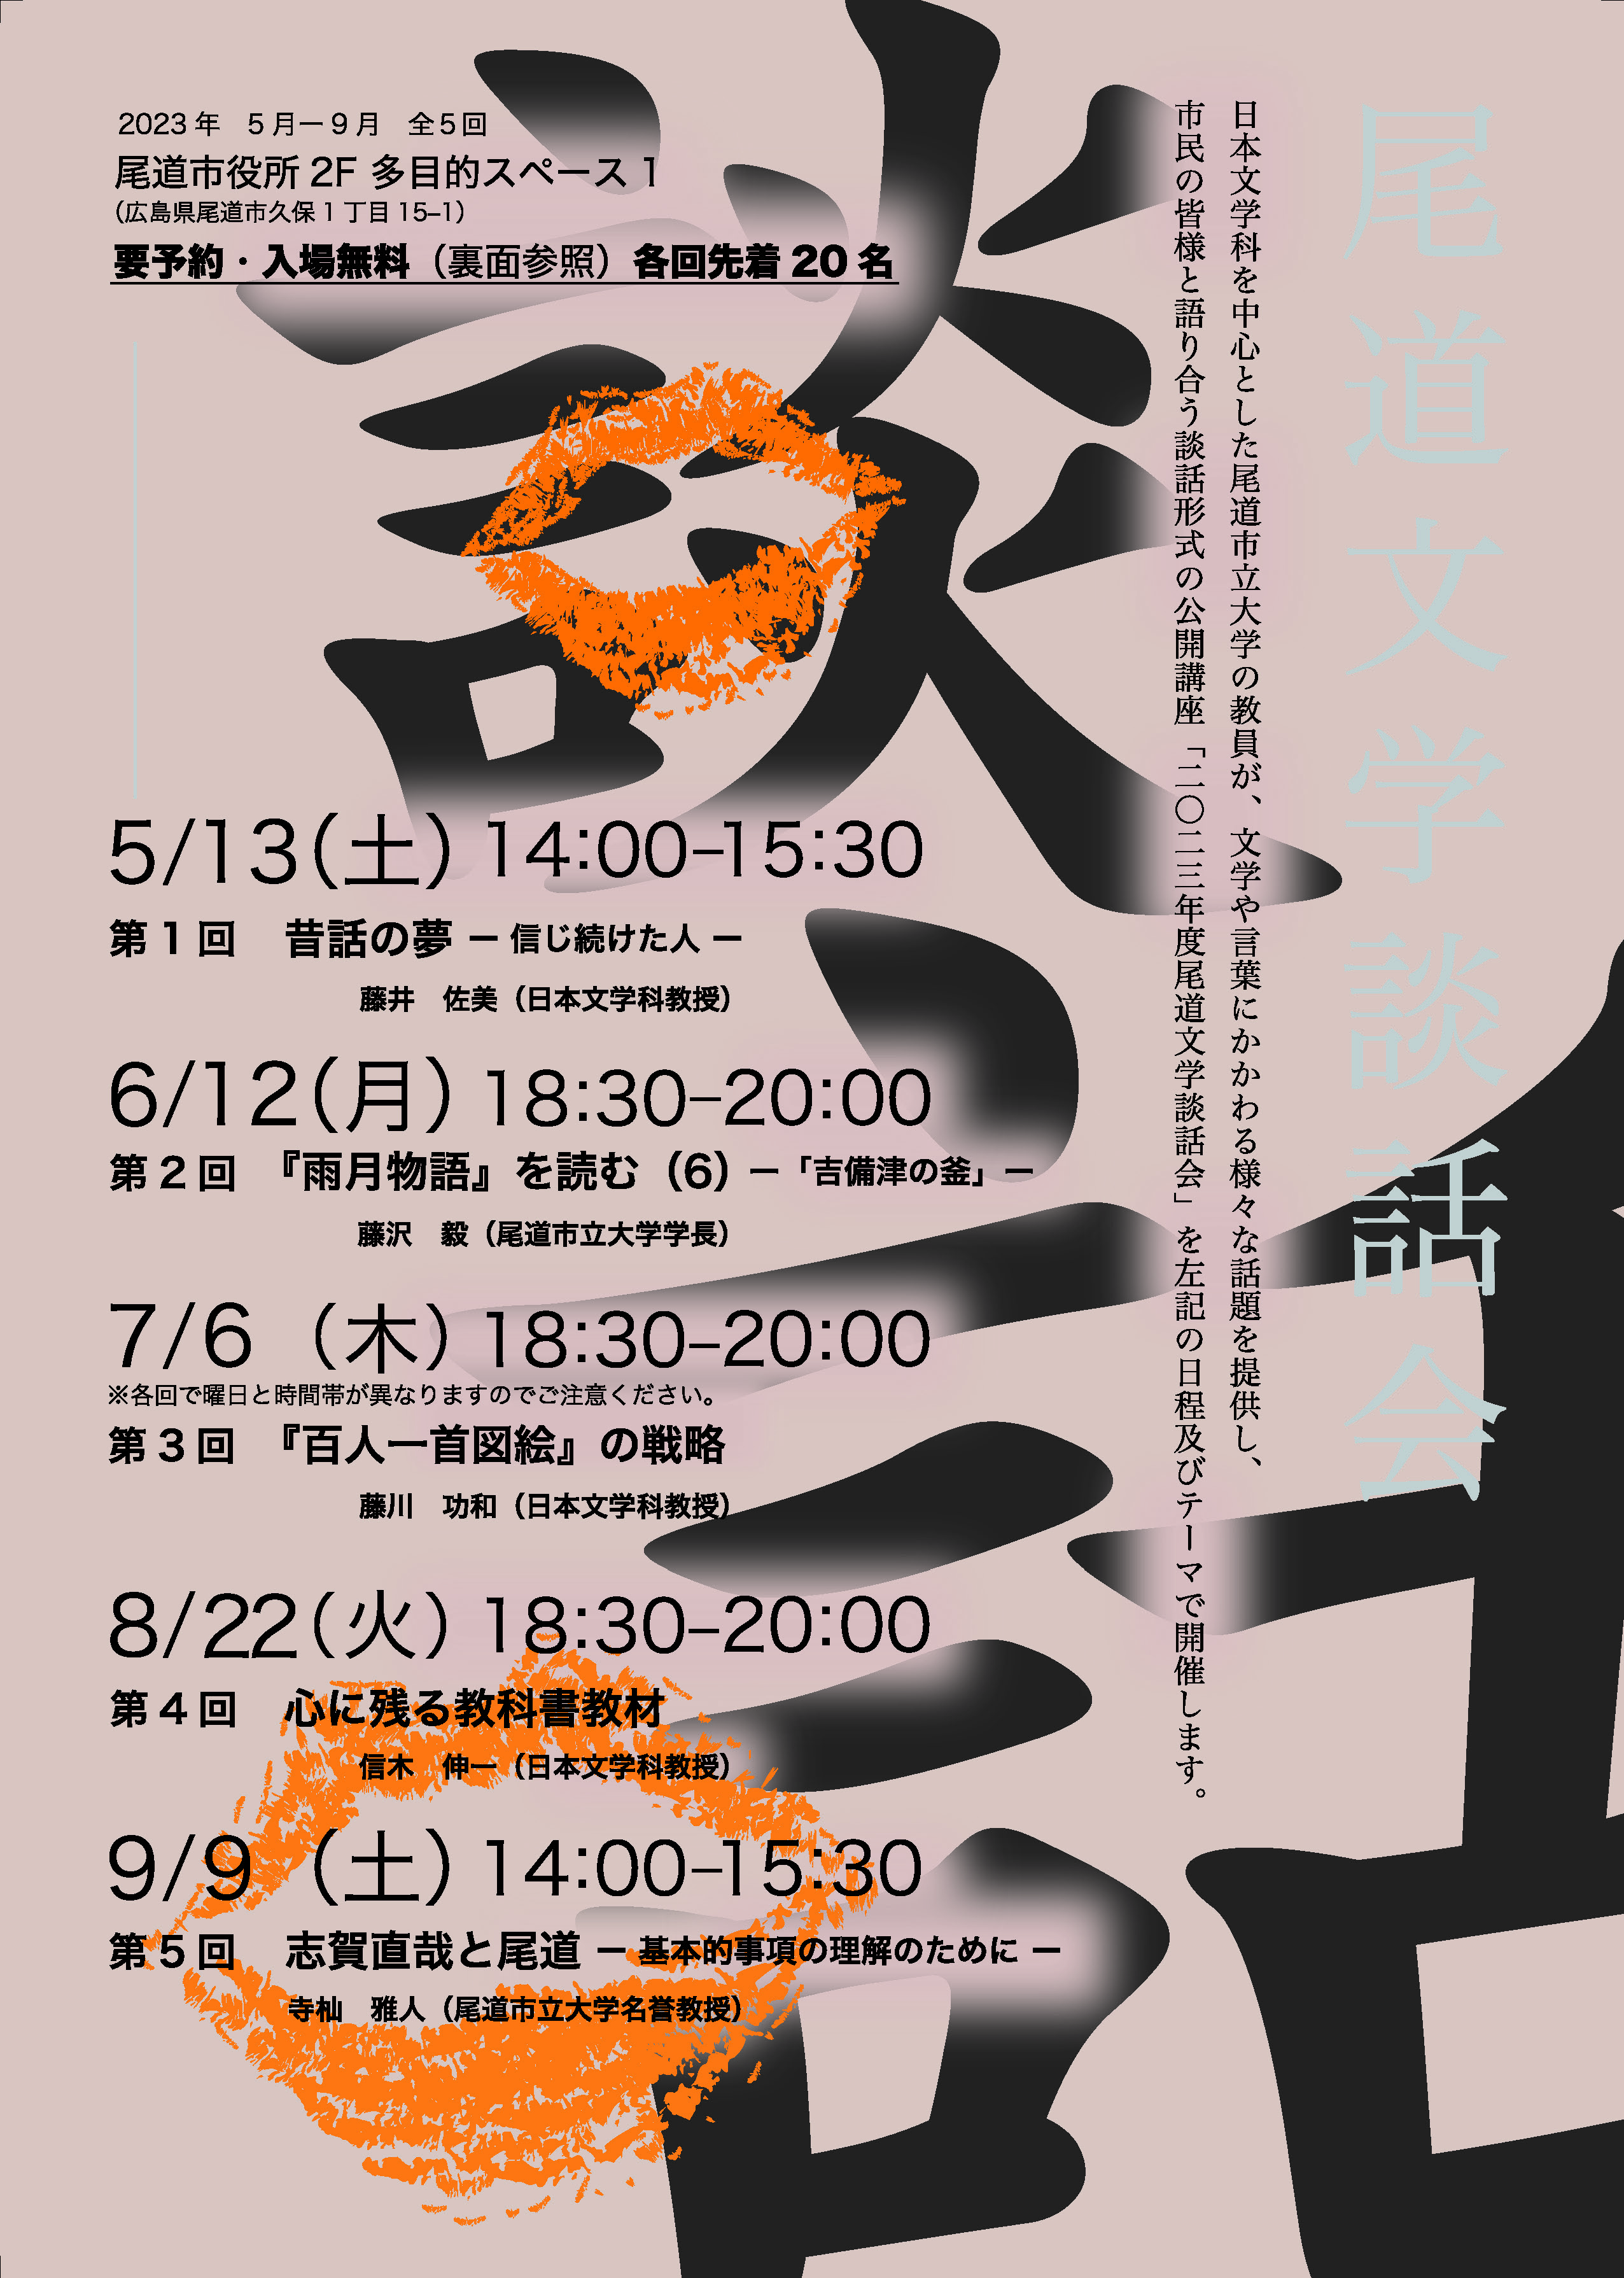 7・8・9月開催日決定】尾道市立大学公開講座「2023年度 尾道文学談話会